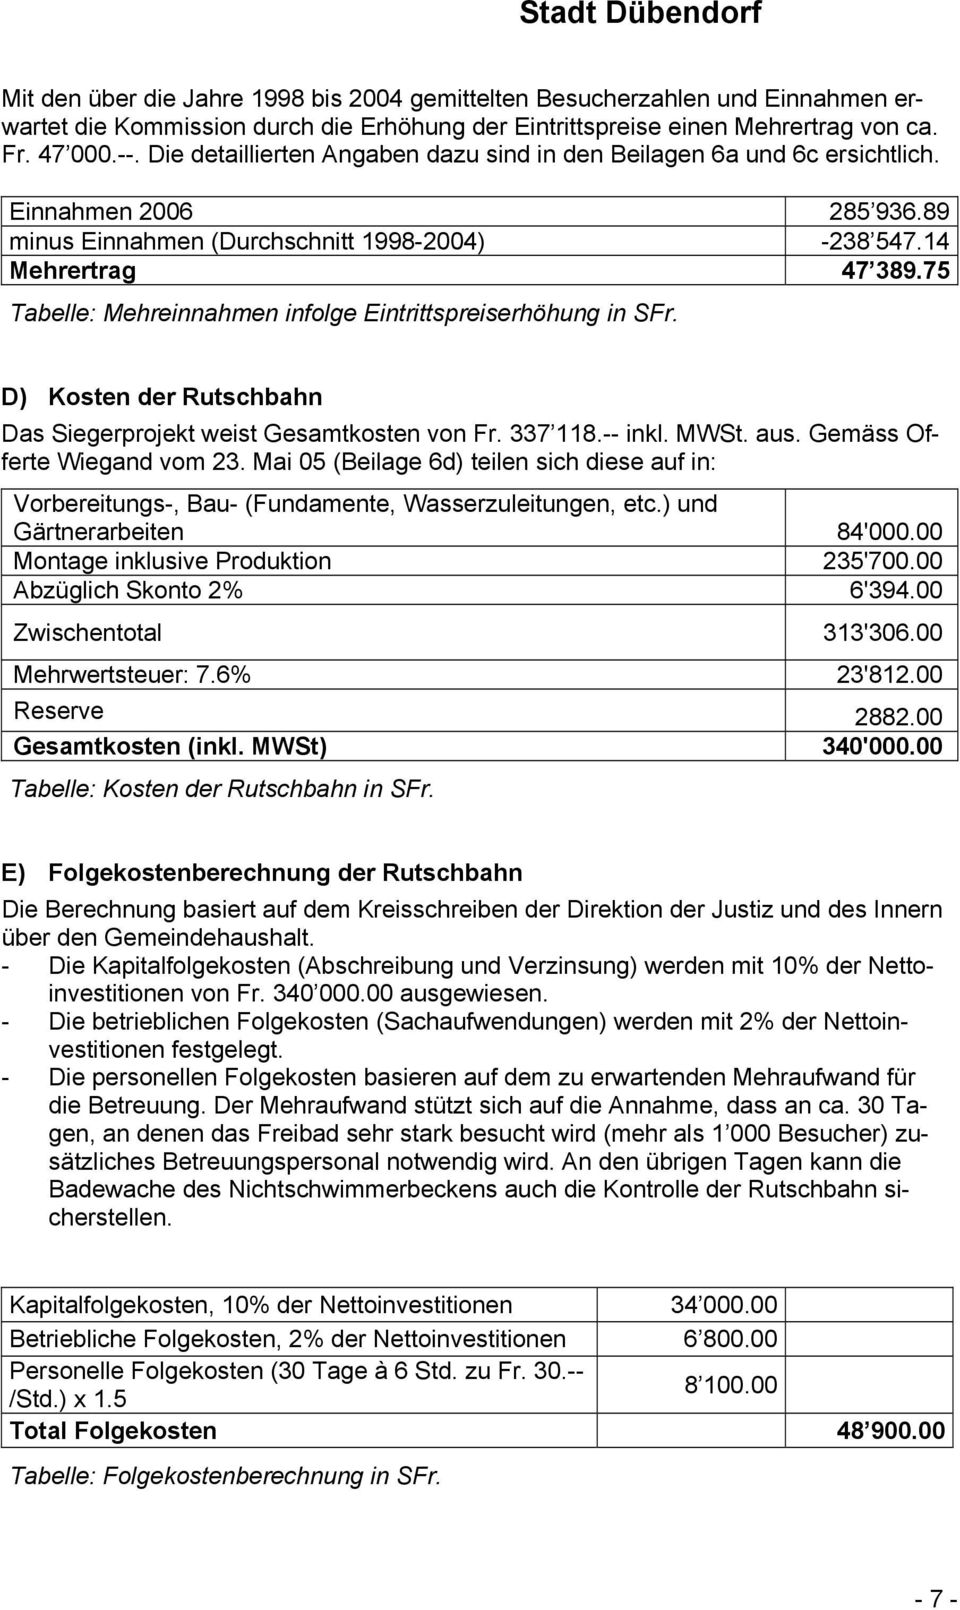 75 Tabelle: Mehreinnahmen infolge Eintrittspreiserhöhung in SFr. D) Kosten der Rutschbahn Das Siegerprojekt weist Gesamtkosten von Fr. 337 118.-- inkl. MWSt. aus. Gemäss Offerte Wiegand vom 23.